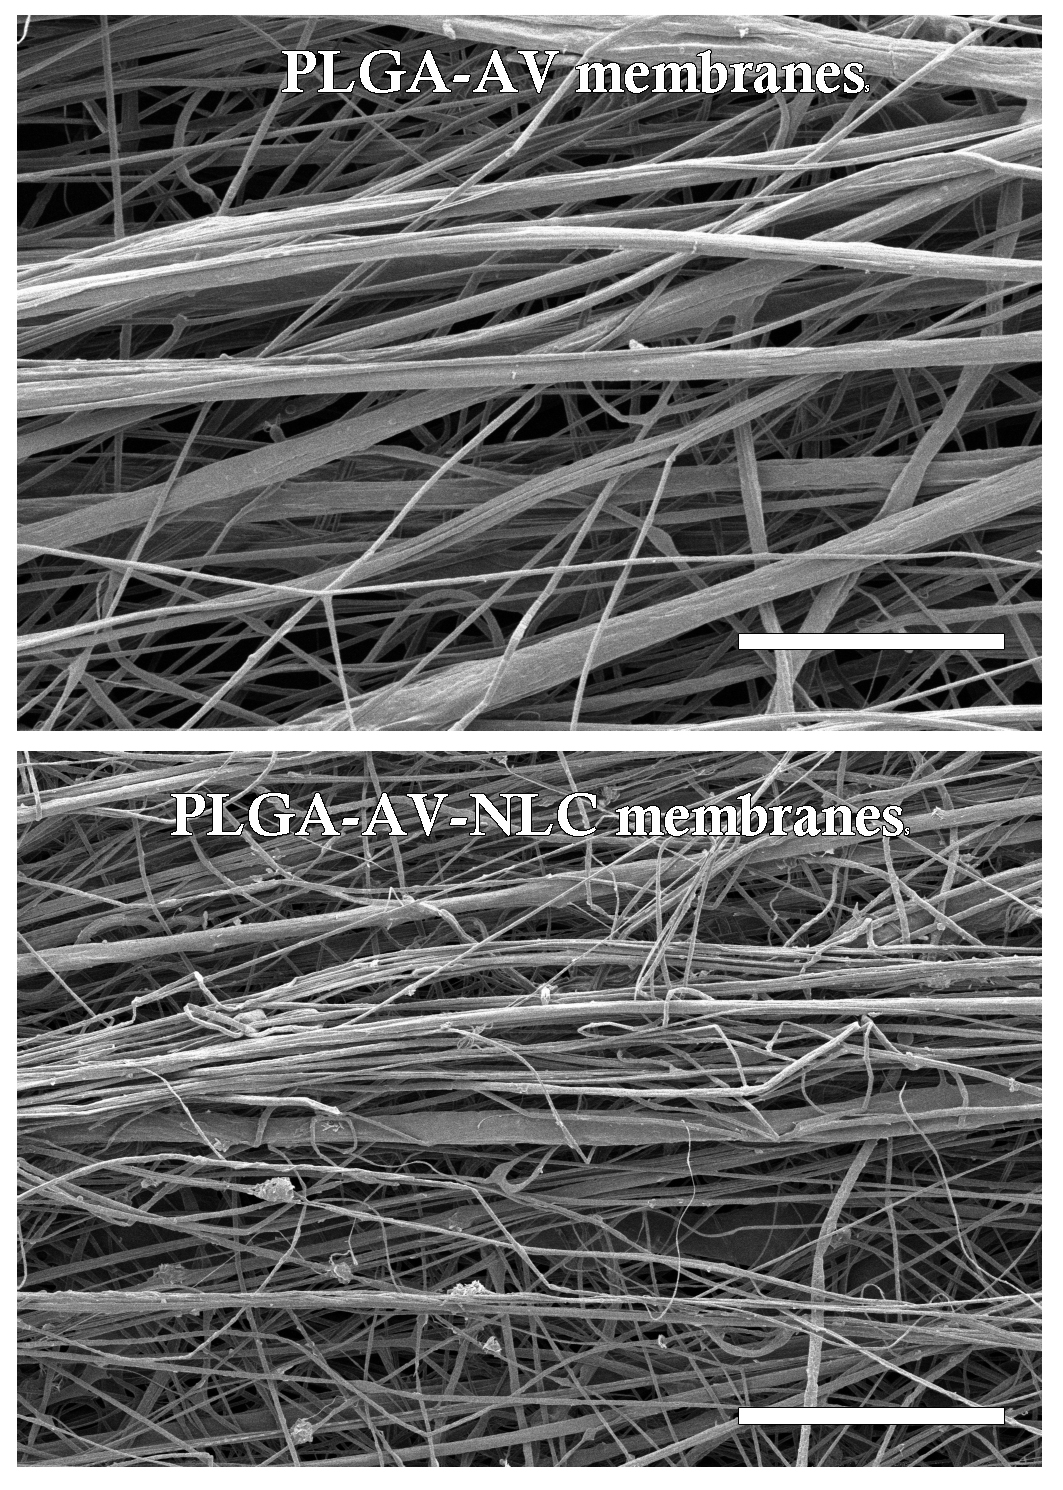 SEM images of the PLGA-AV and PLGA-AV-NLC membranes. The scale bar of each image indicates 100 μm.